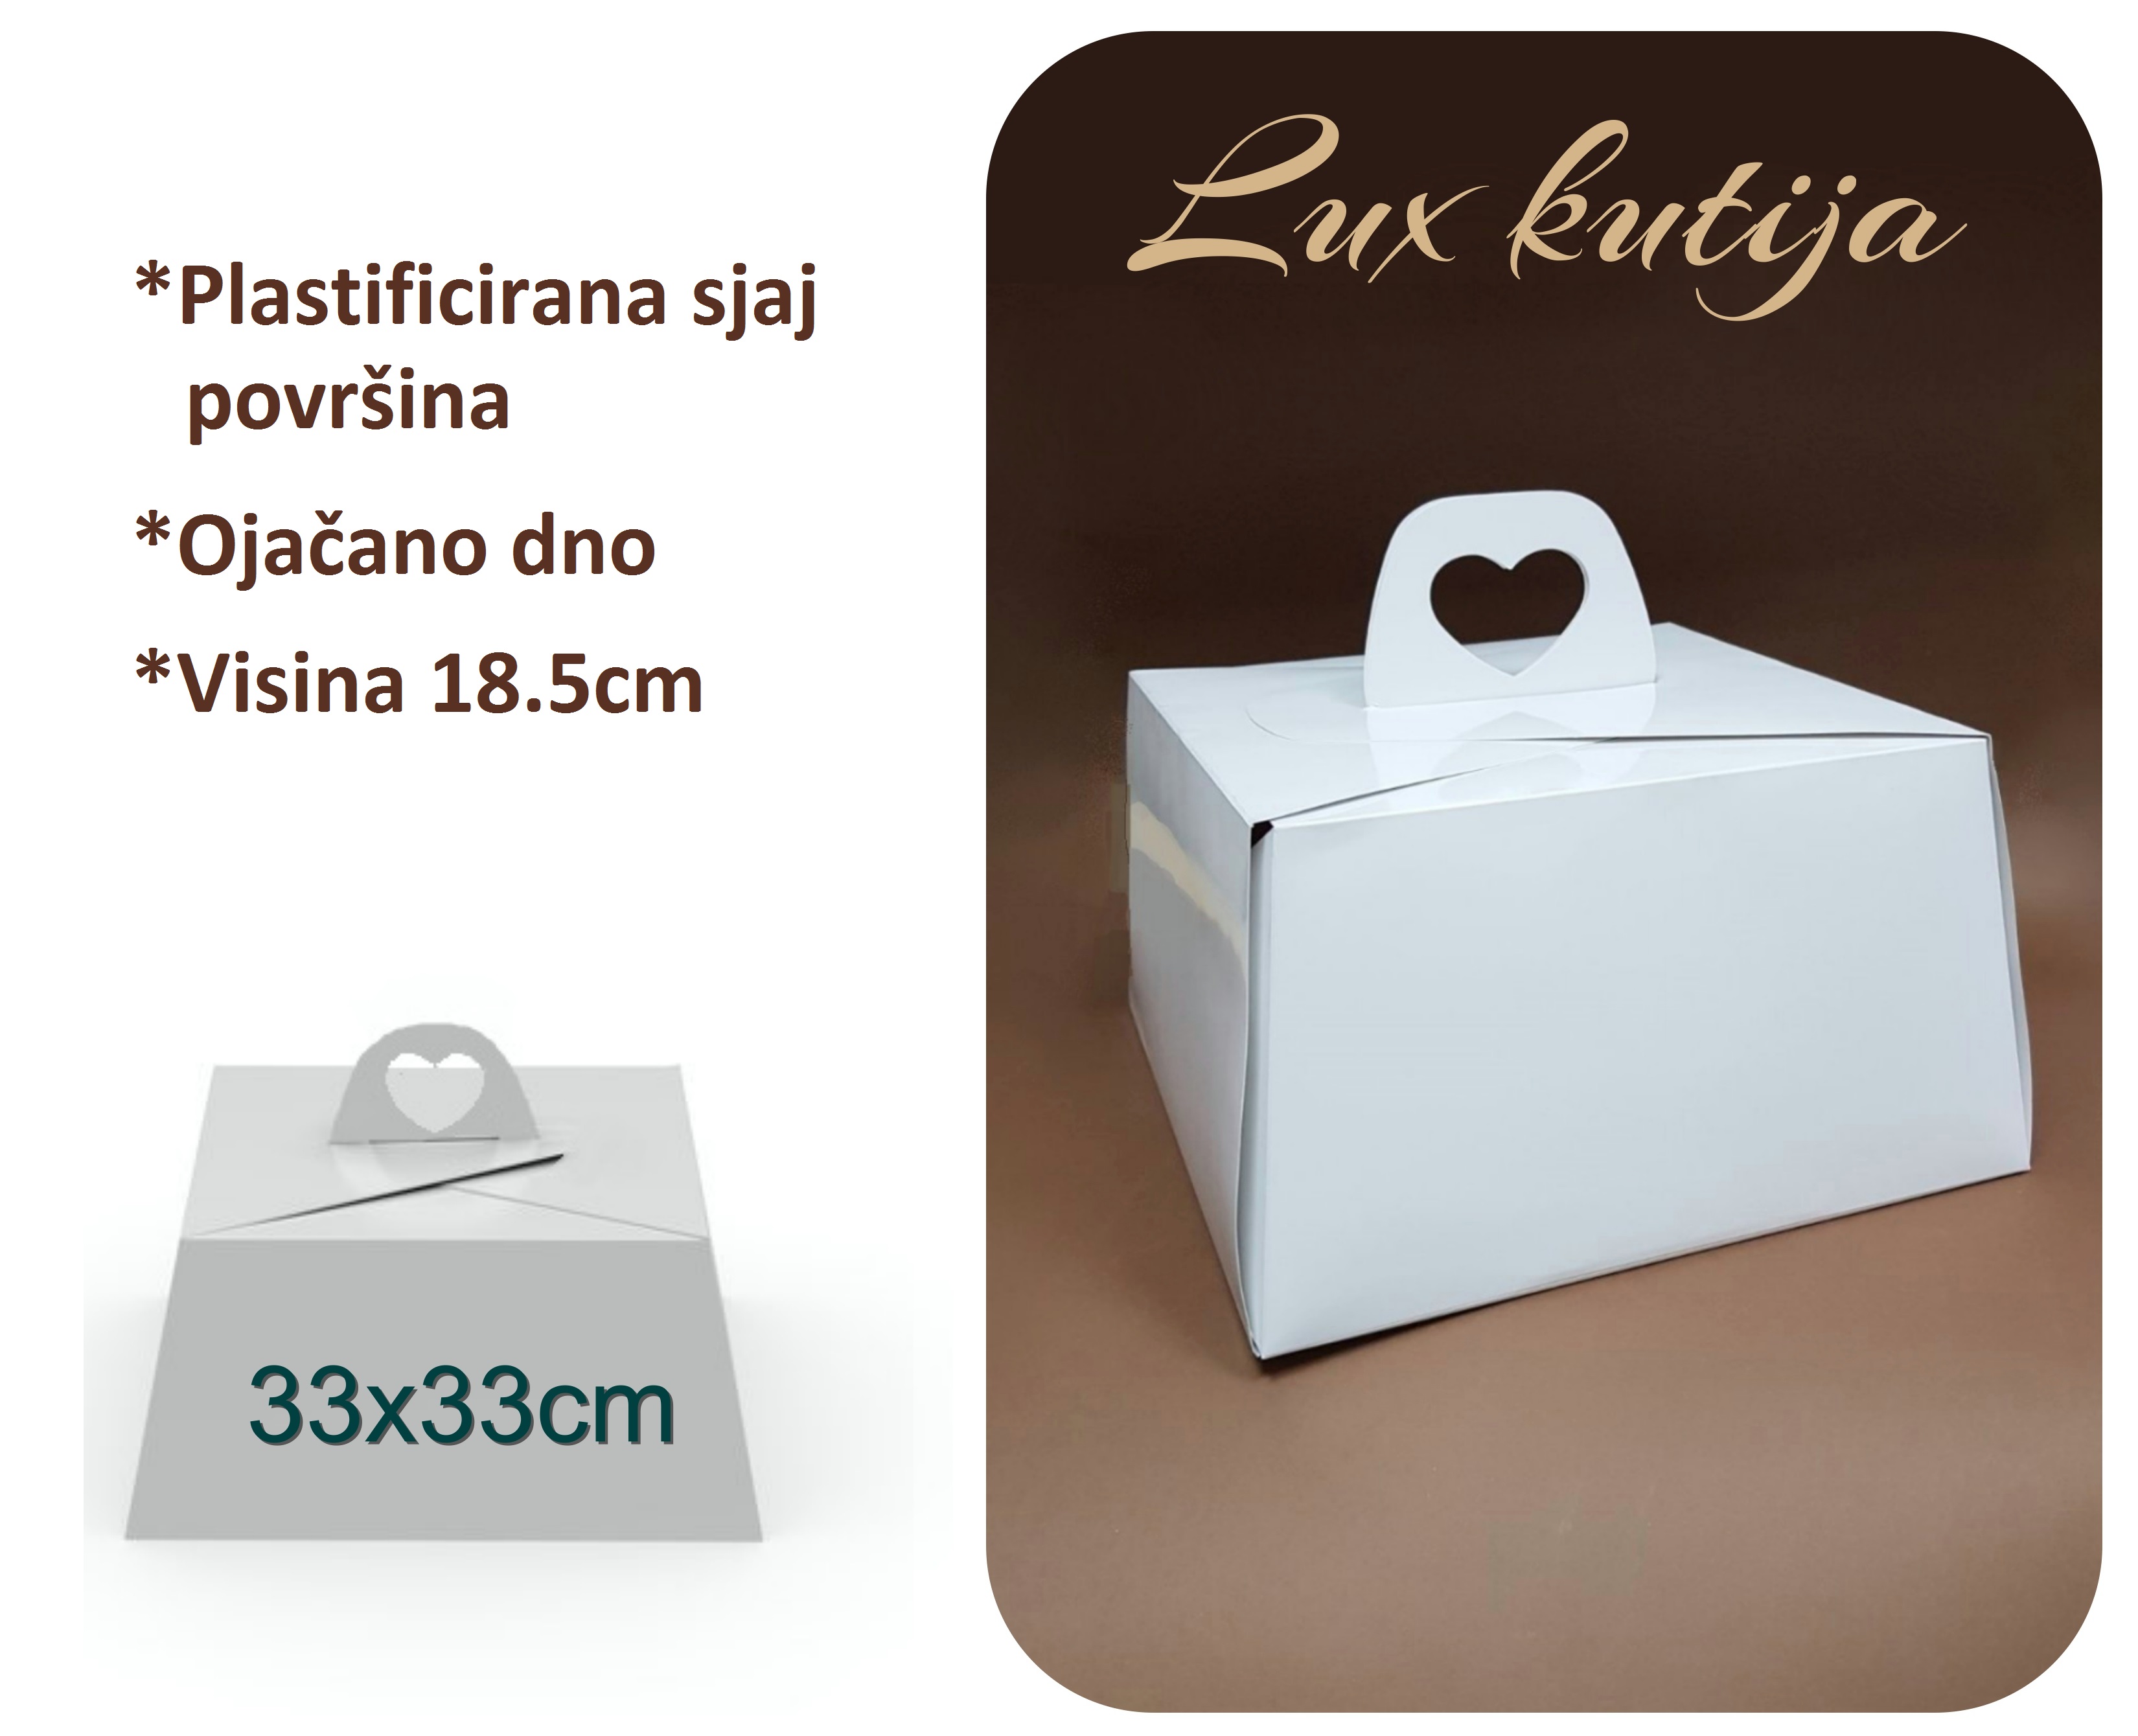 Lux kutija za torte 33x33cm - 5 KOMADA/Set